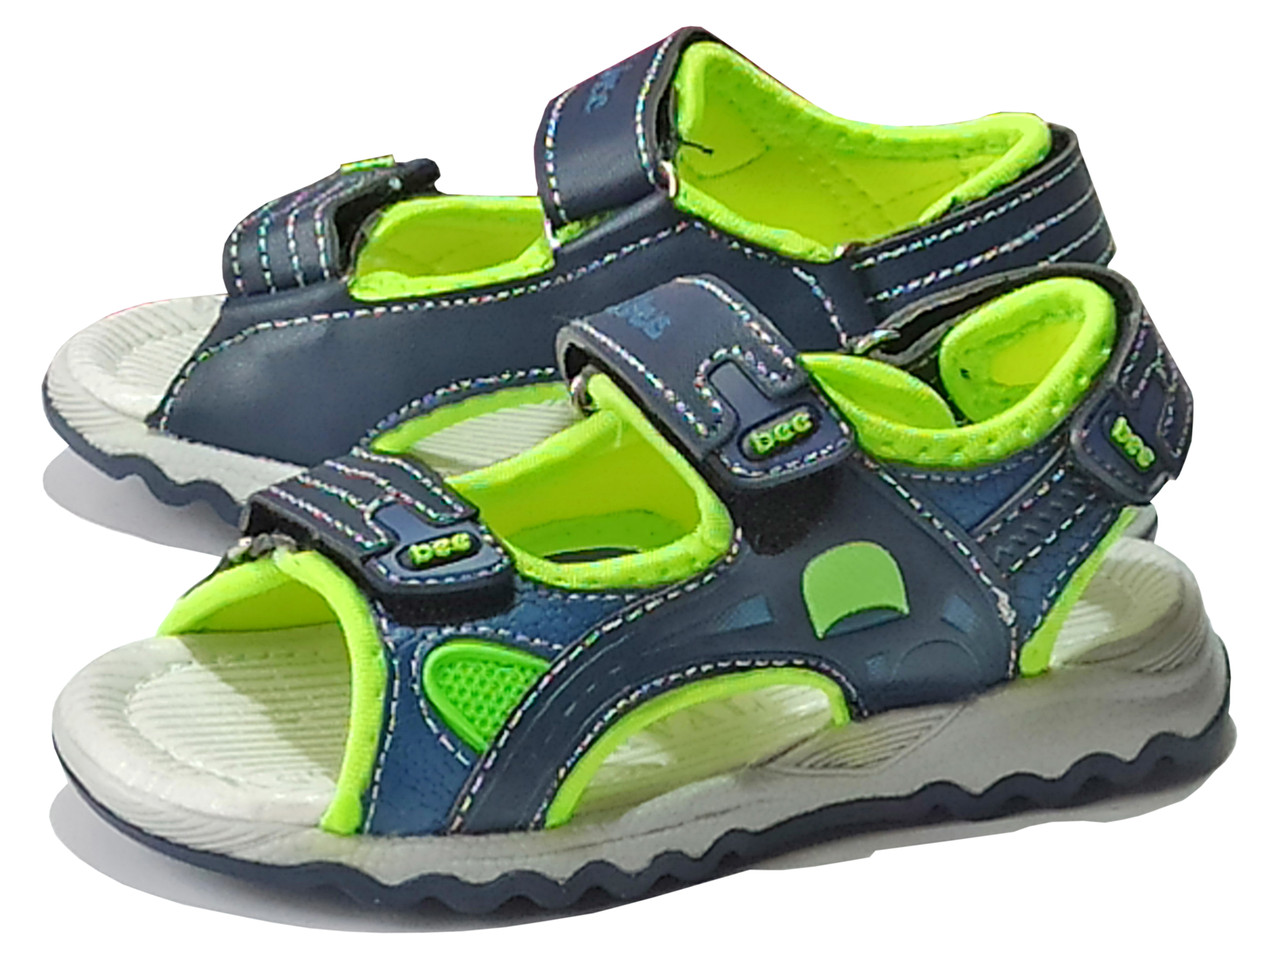 Відкрити спортивні босоніжки сандалі клібі clibee літнє взуття для хлопчика 260 з зеленим р.26,30